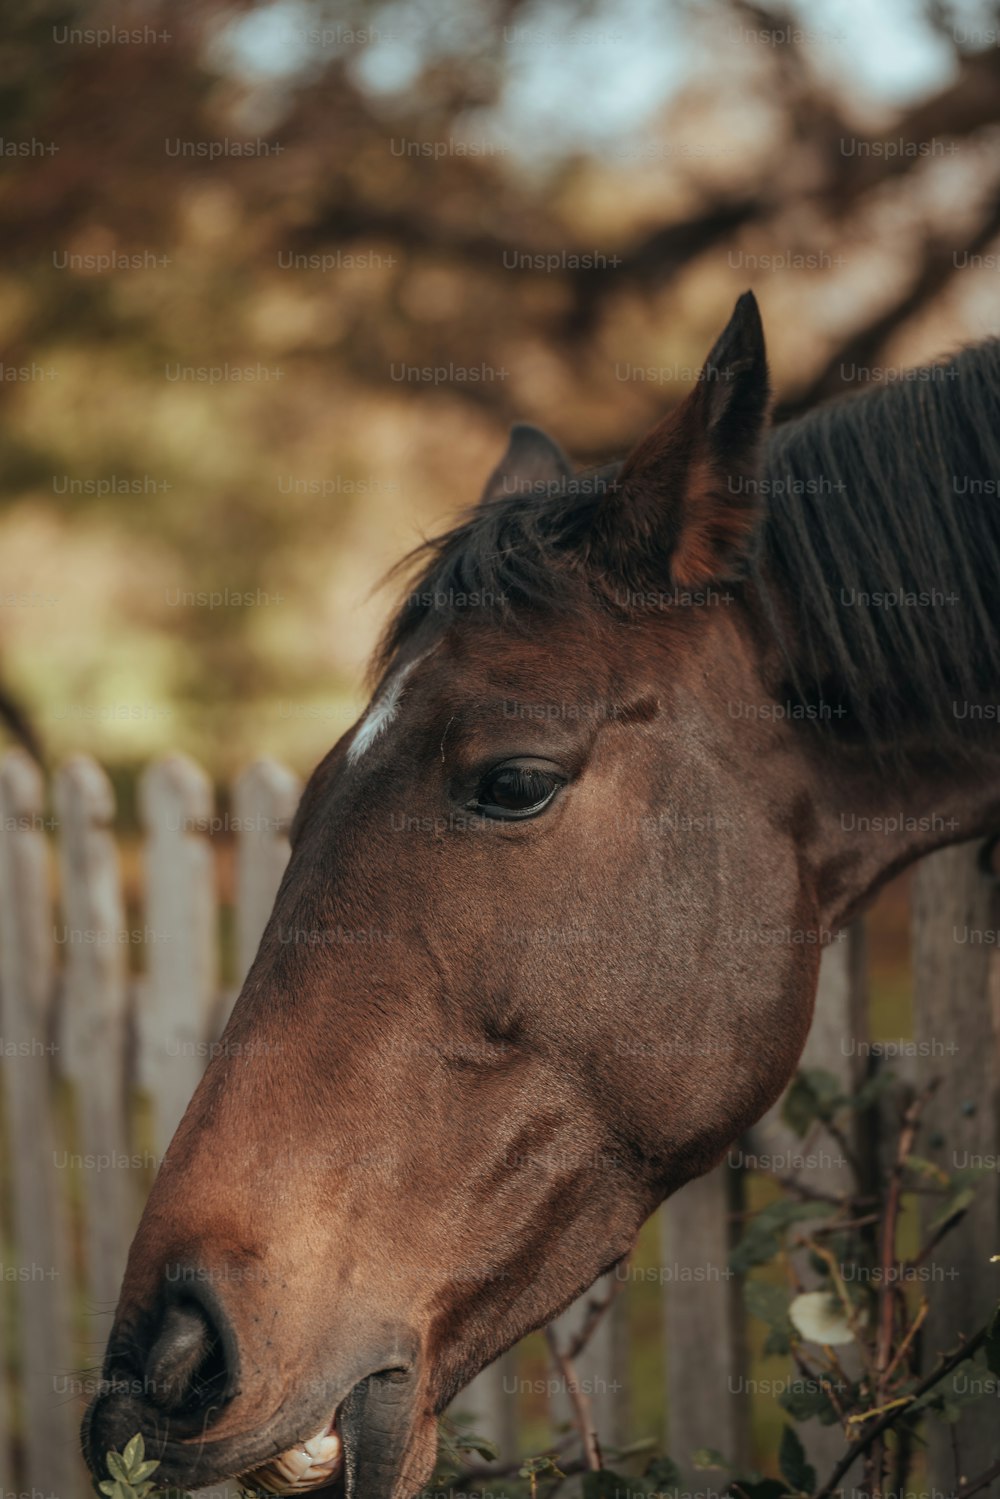 木製の柵の横に立っている茶色の馬